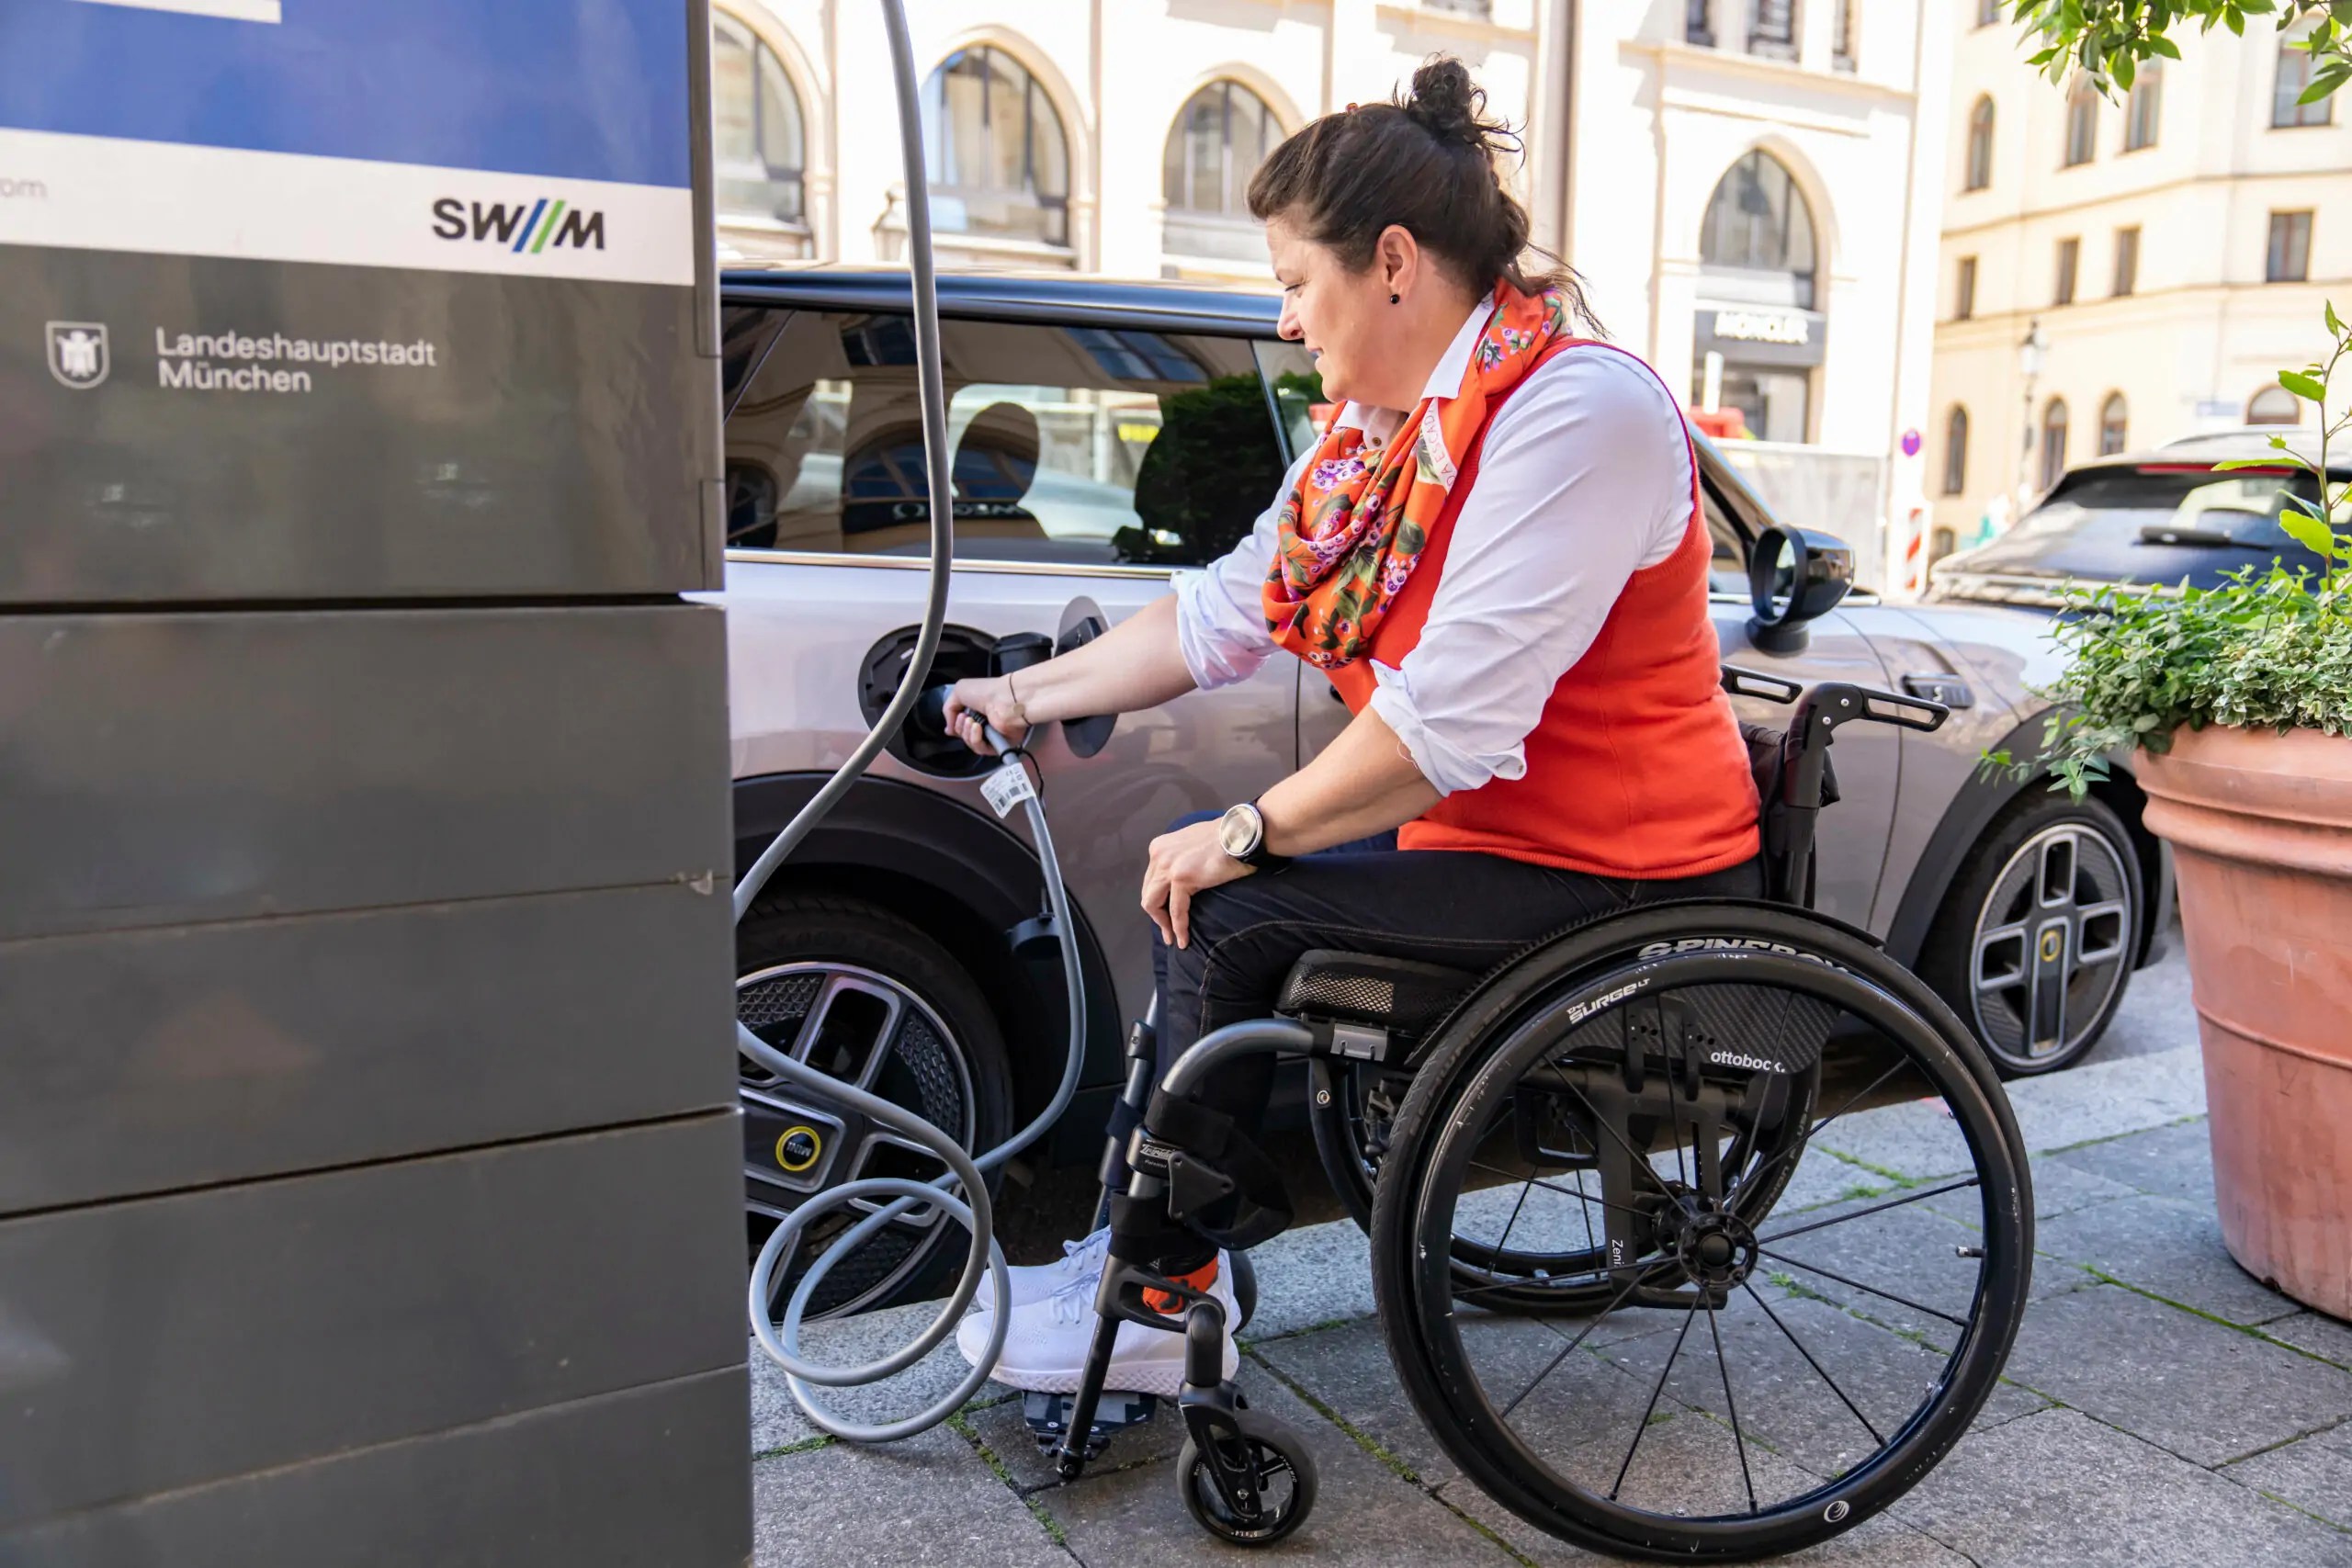 ميني كوبر SE المخصصة للأشخاص ذوي الاحتياجات الخاصة